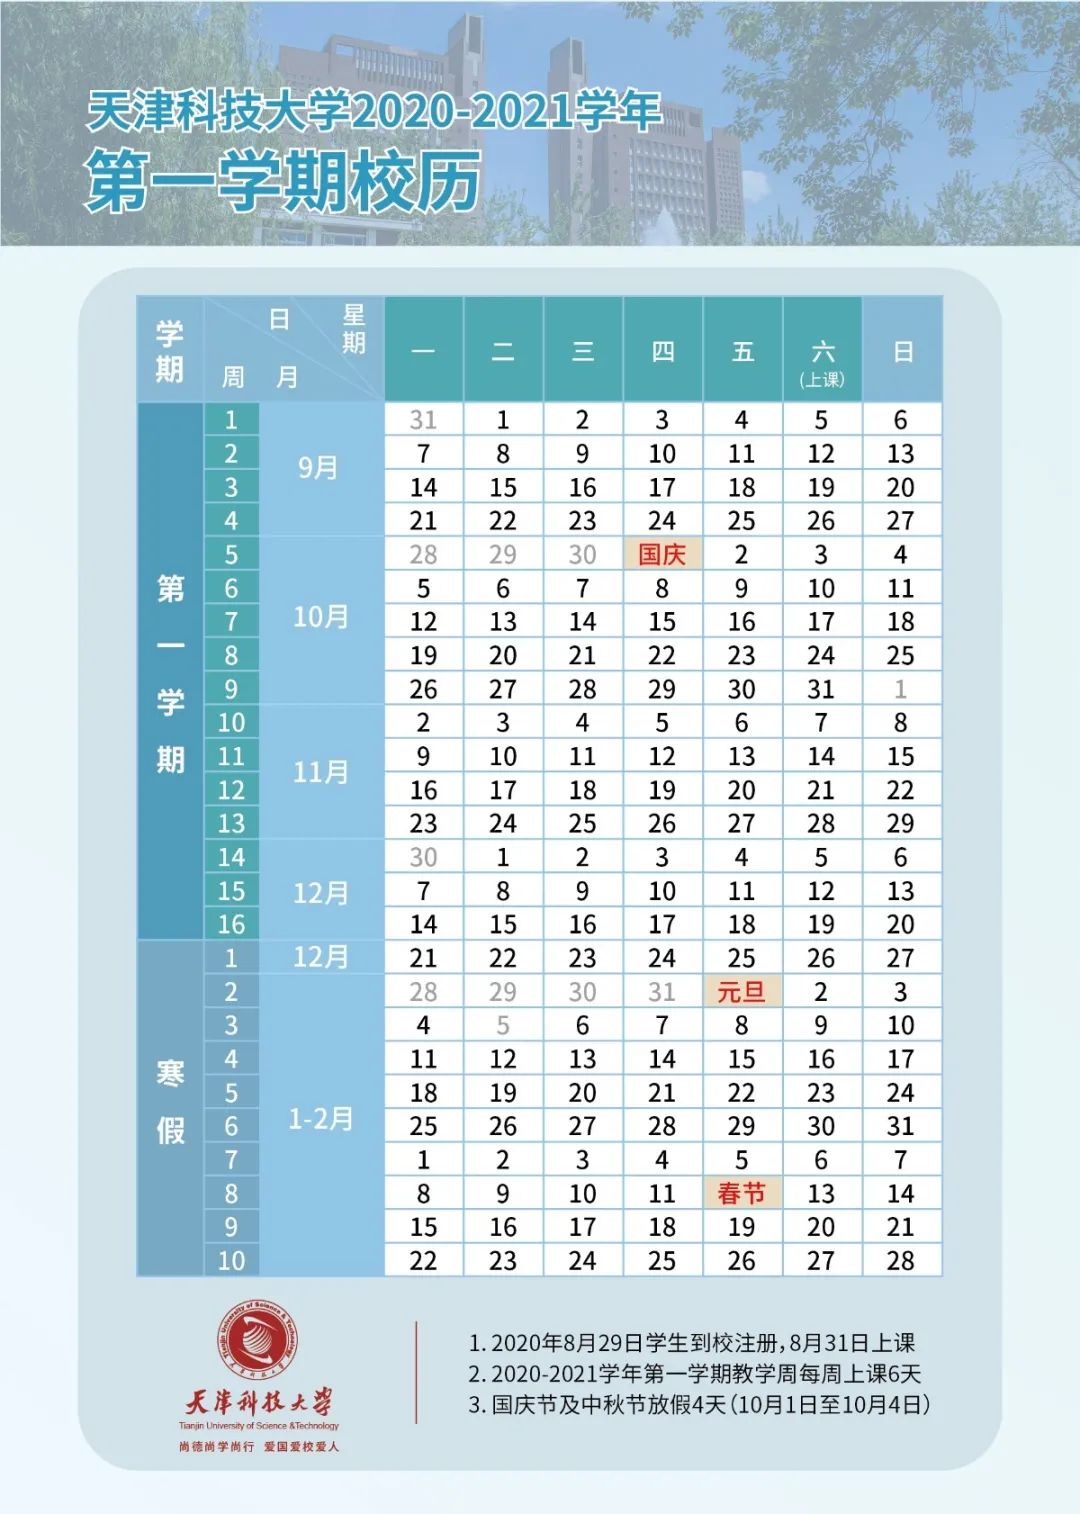 共计70天2020年12月21日—2021年2月28日天津科技大学寒假放假时间为